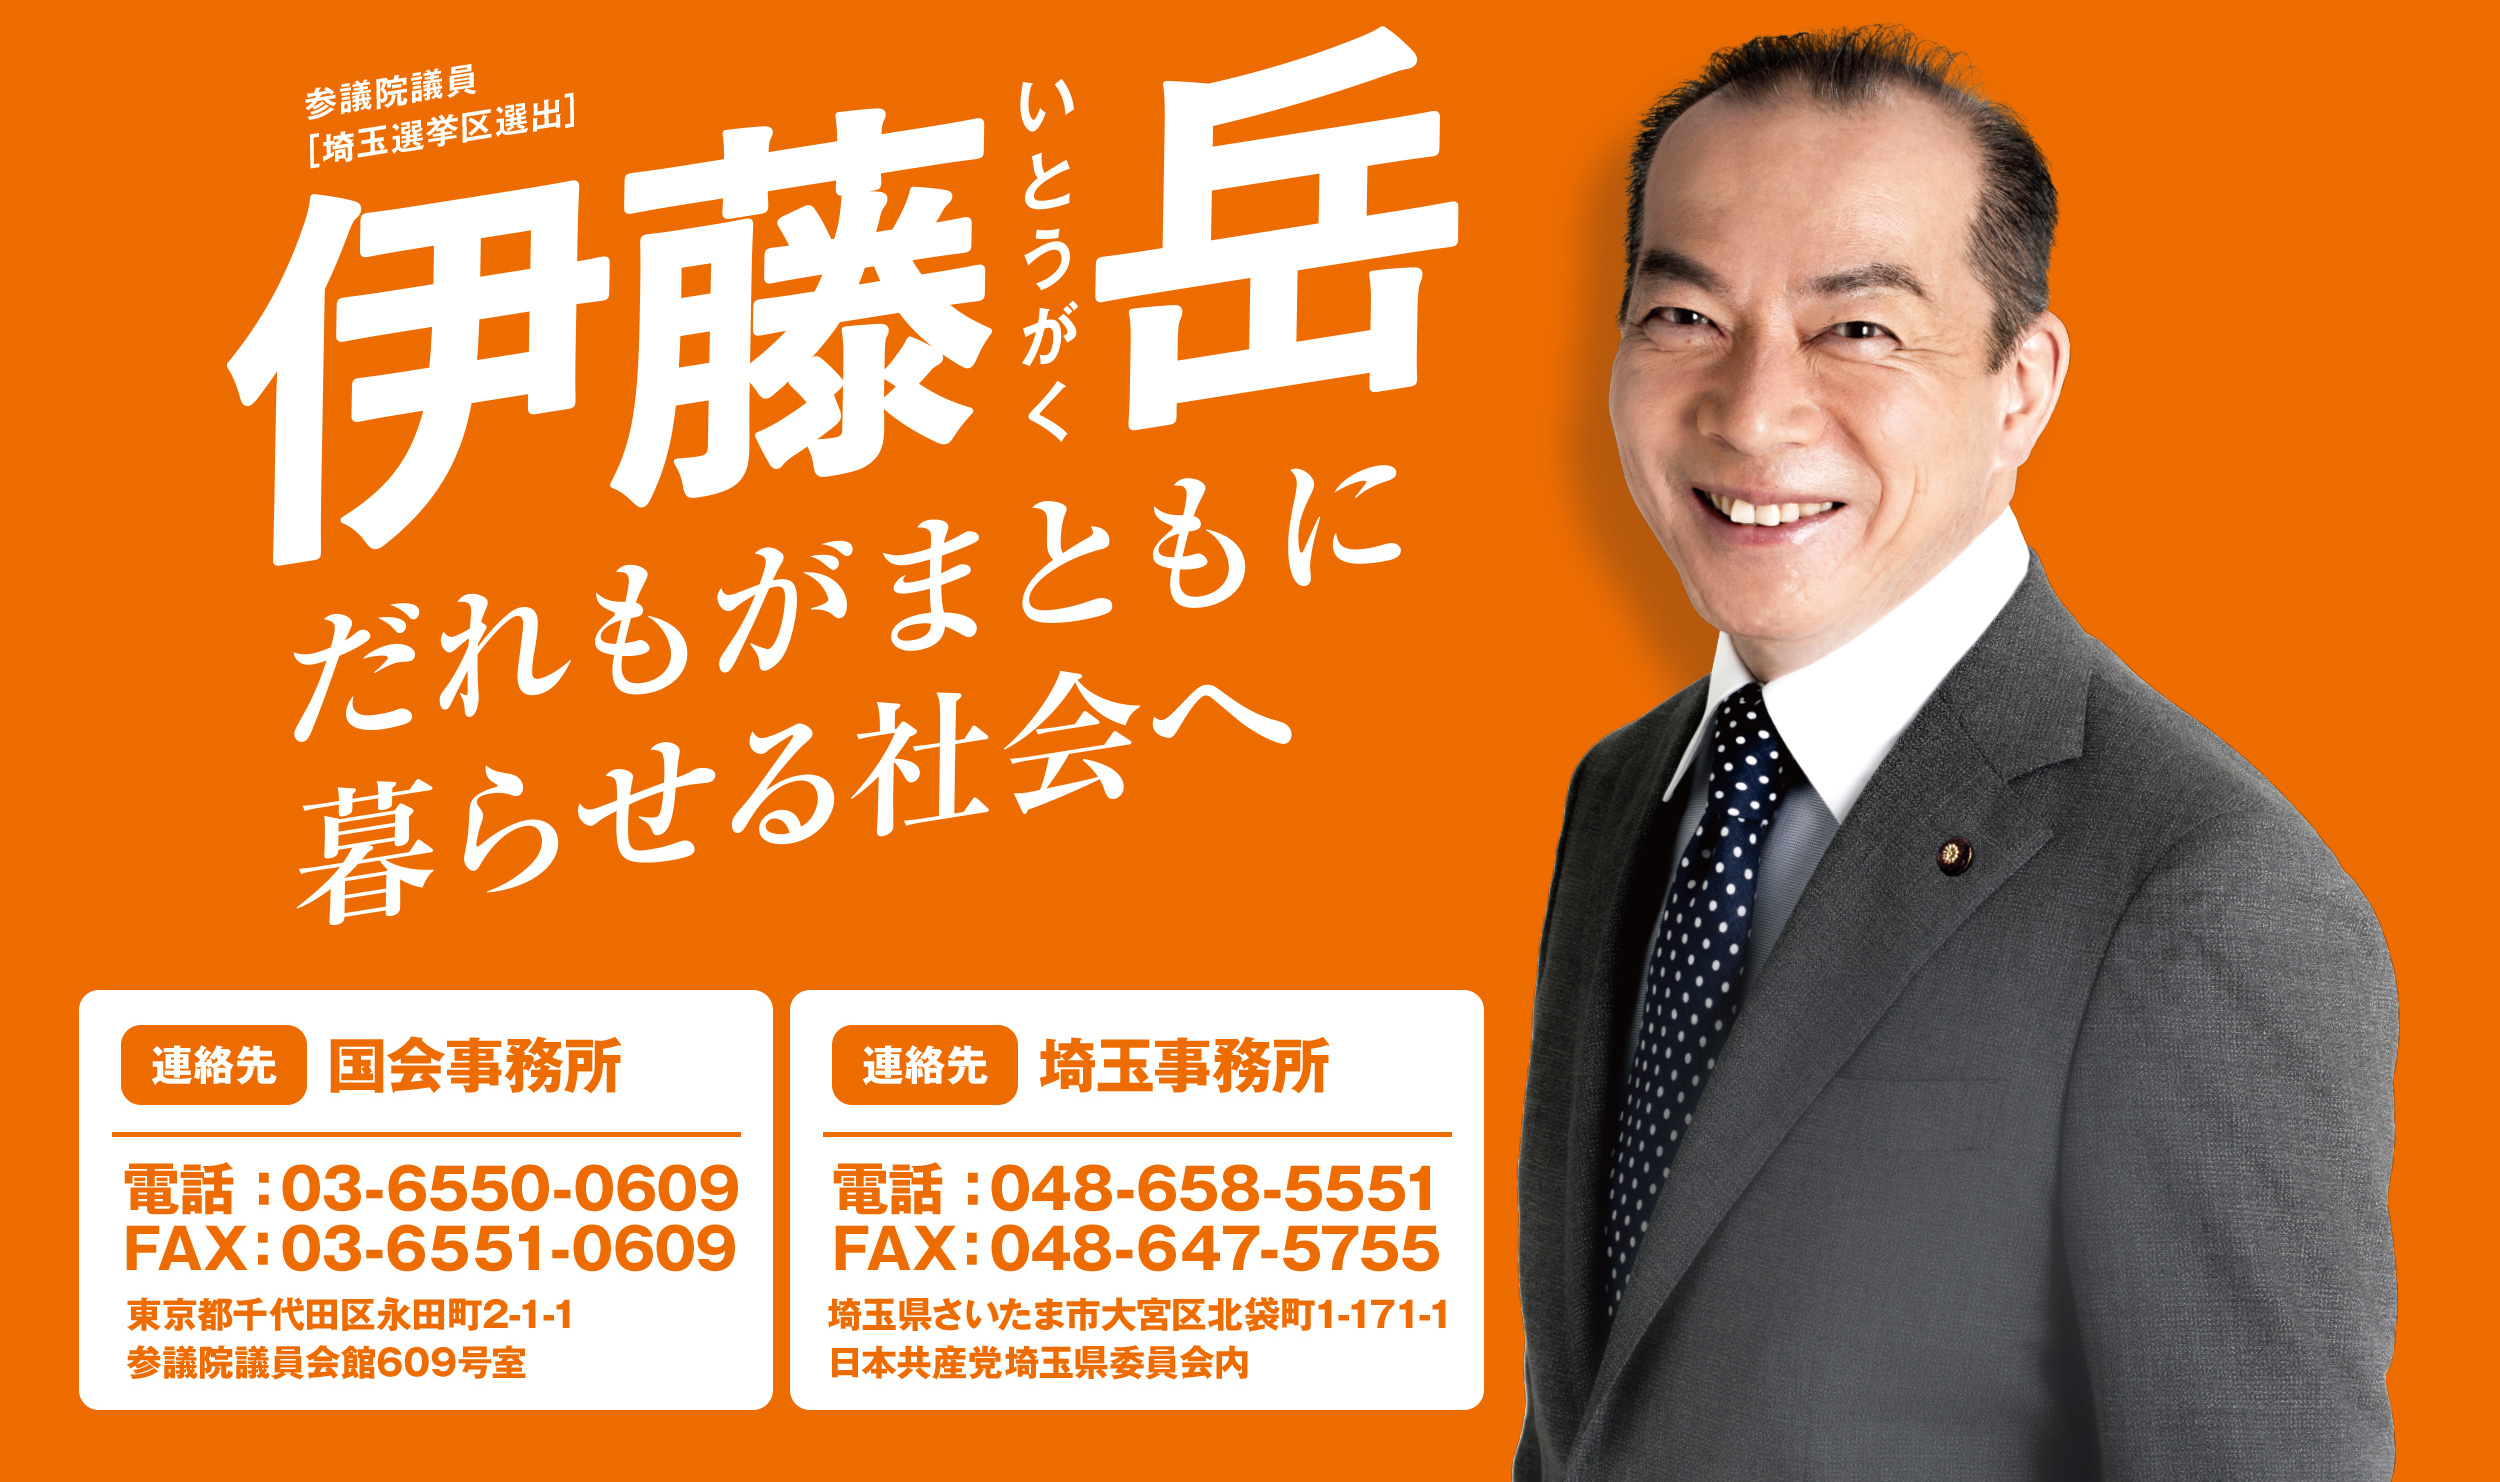 日本共産党 参議院議員 伊藤岳オフィシャルサイト